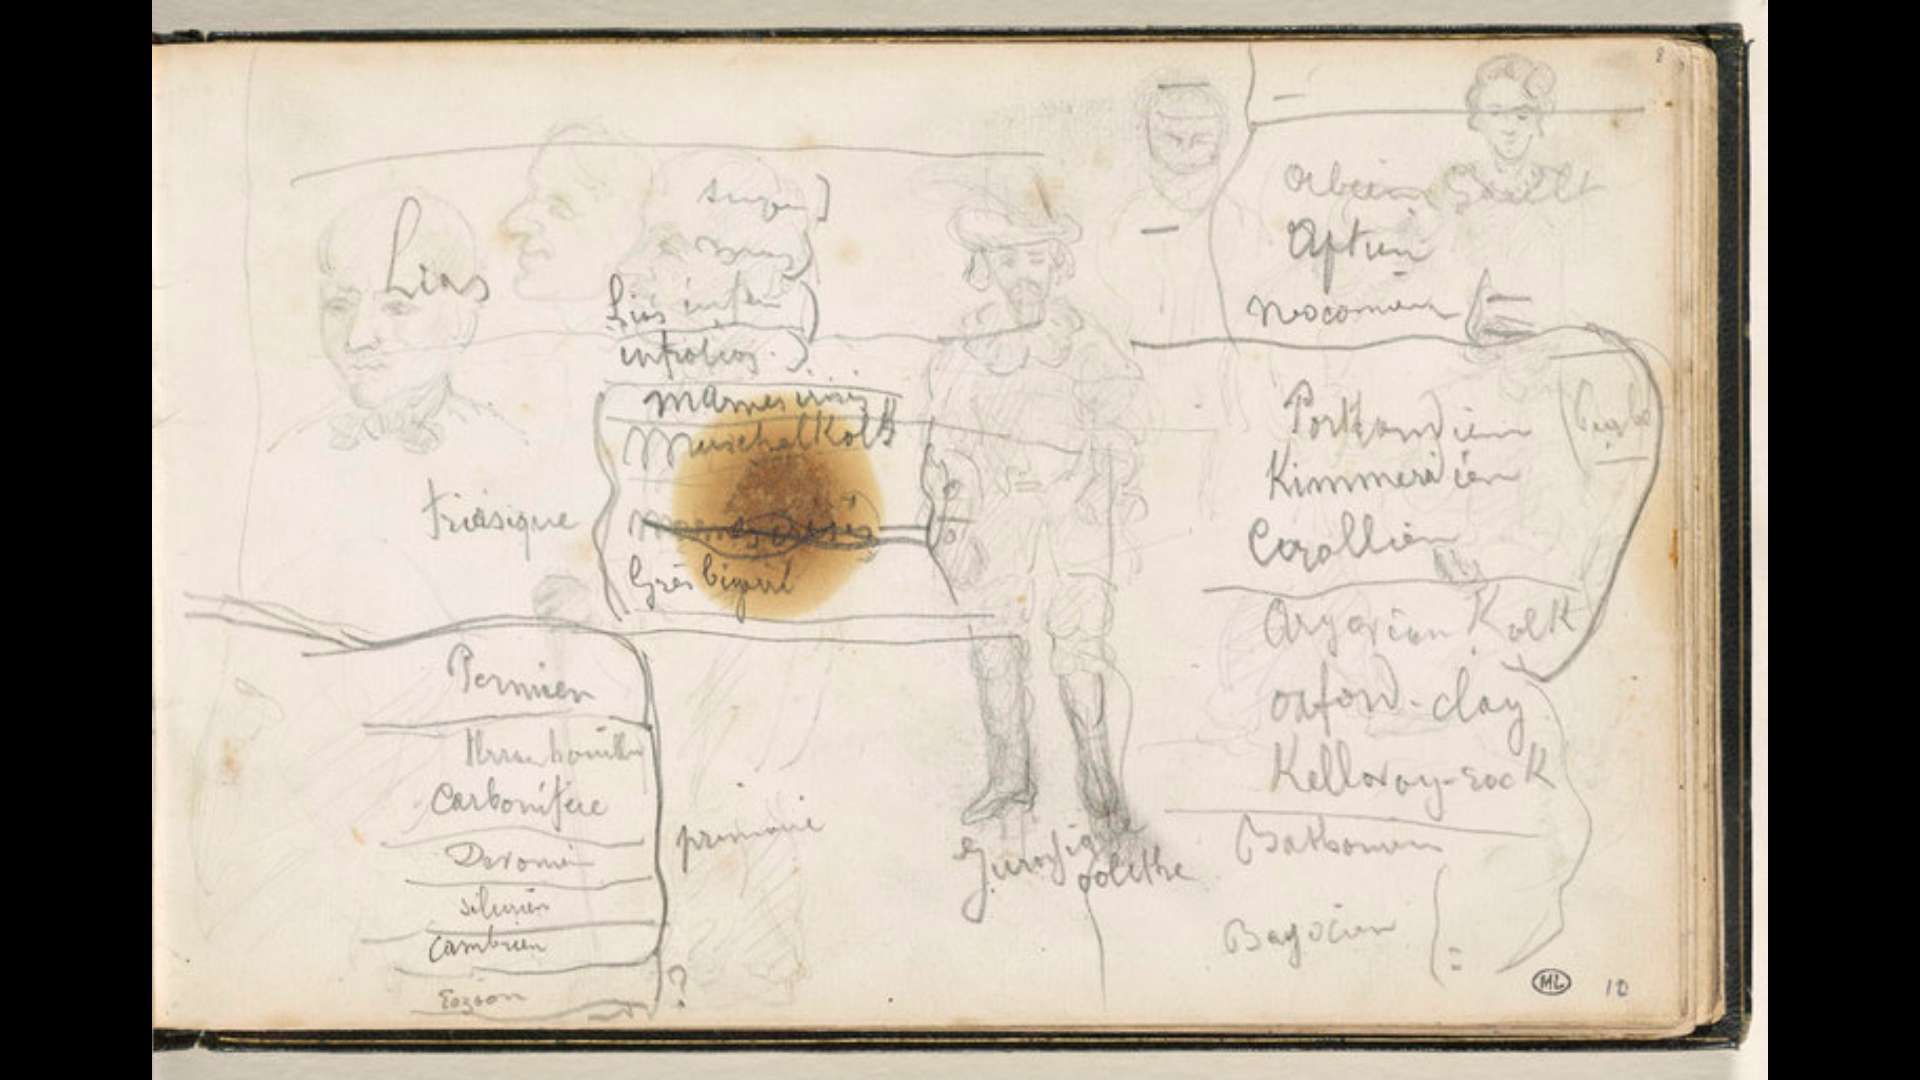 Paul Cézanne (croquis) et Antoine-Fortuné Marion (inscriptions)
double page de carnet avec personnages, visages caricaturés, stratifications et notations de termes géologiques, vers 1866-1867, mine de plomb sur papier, Paris, musée d'Orsay.